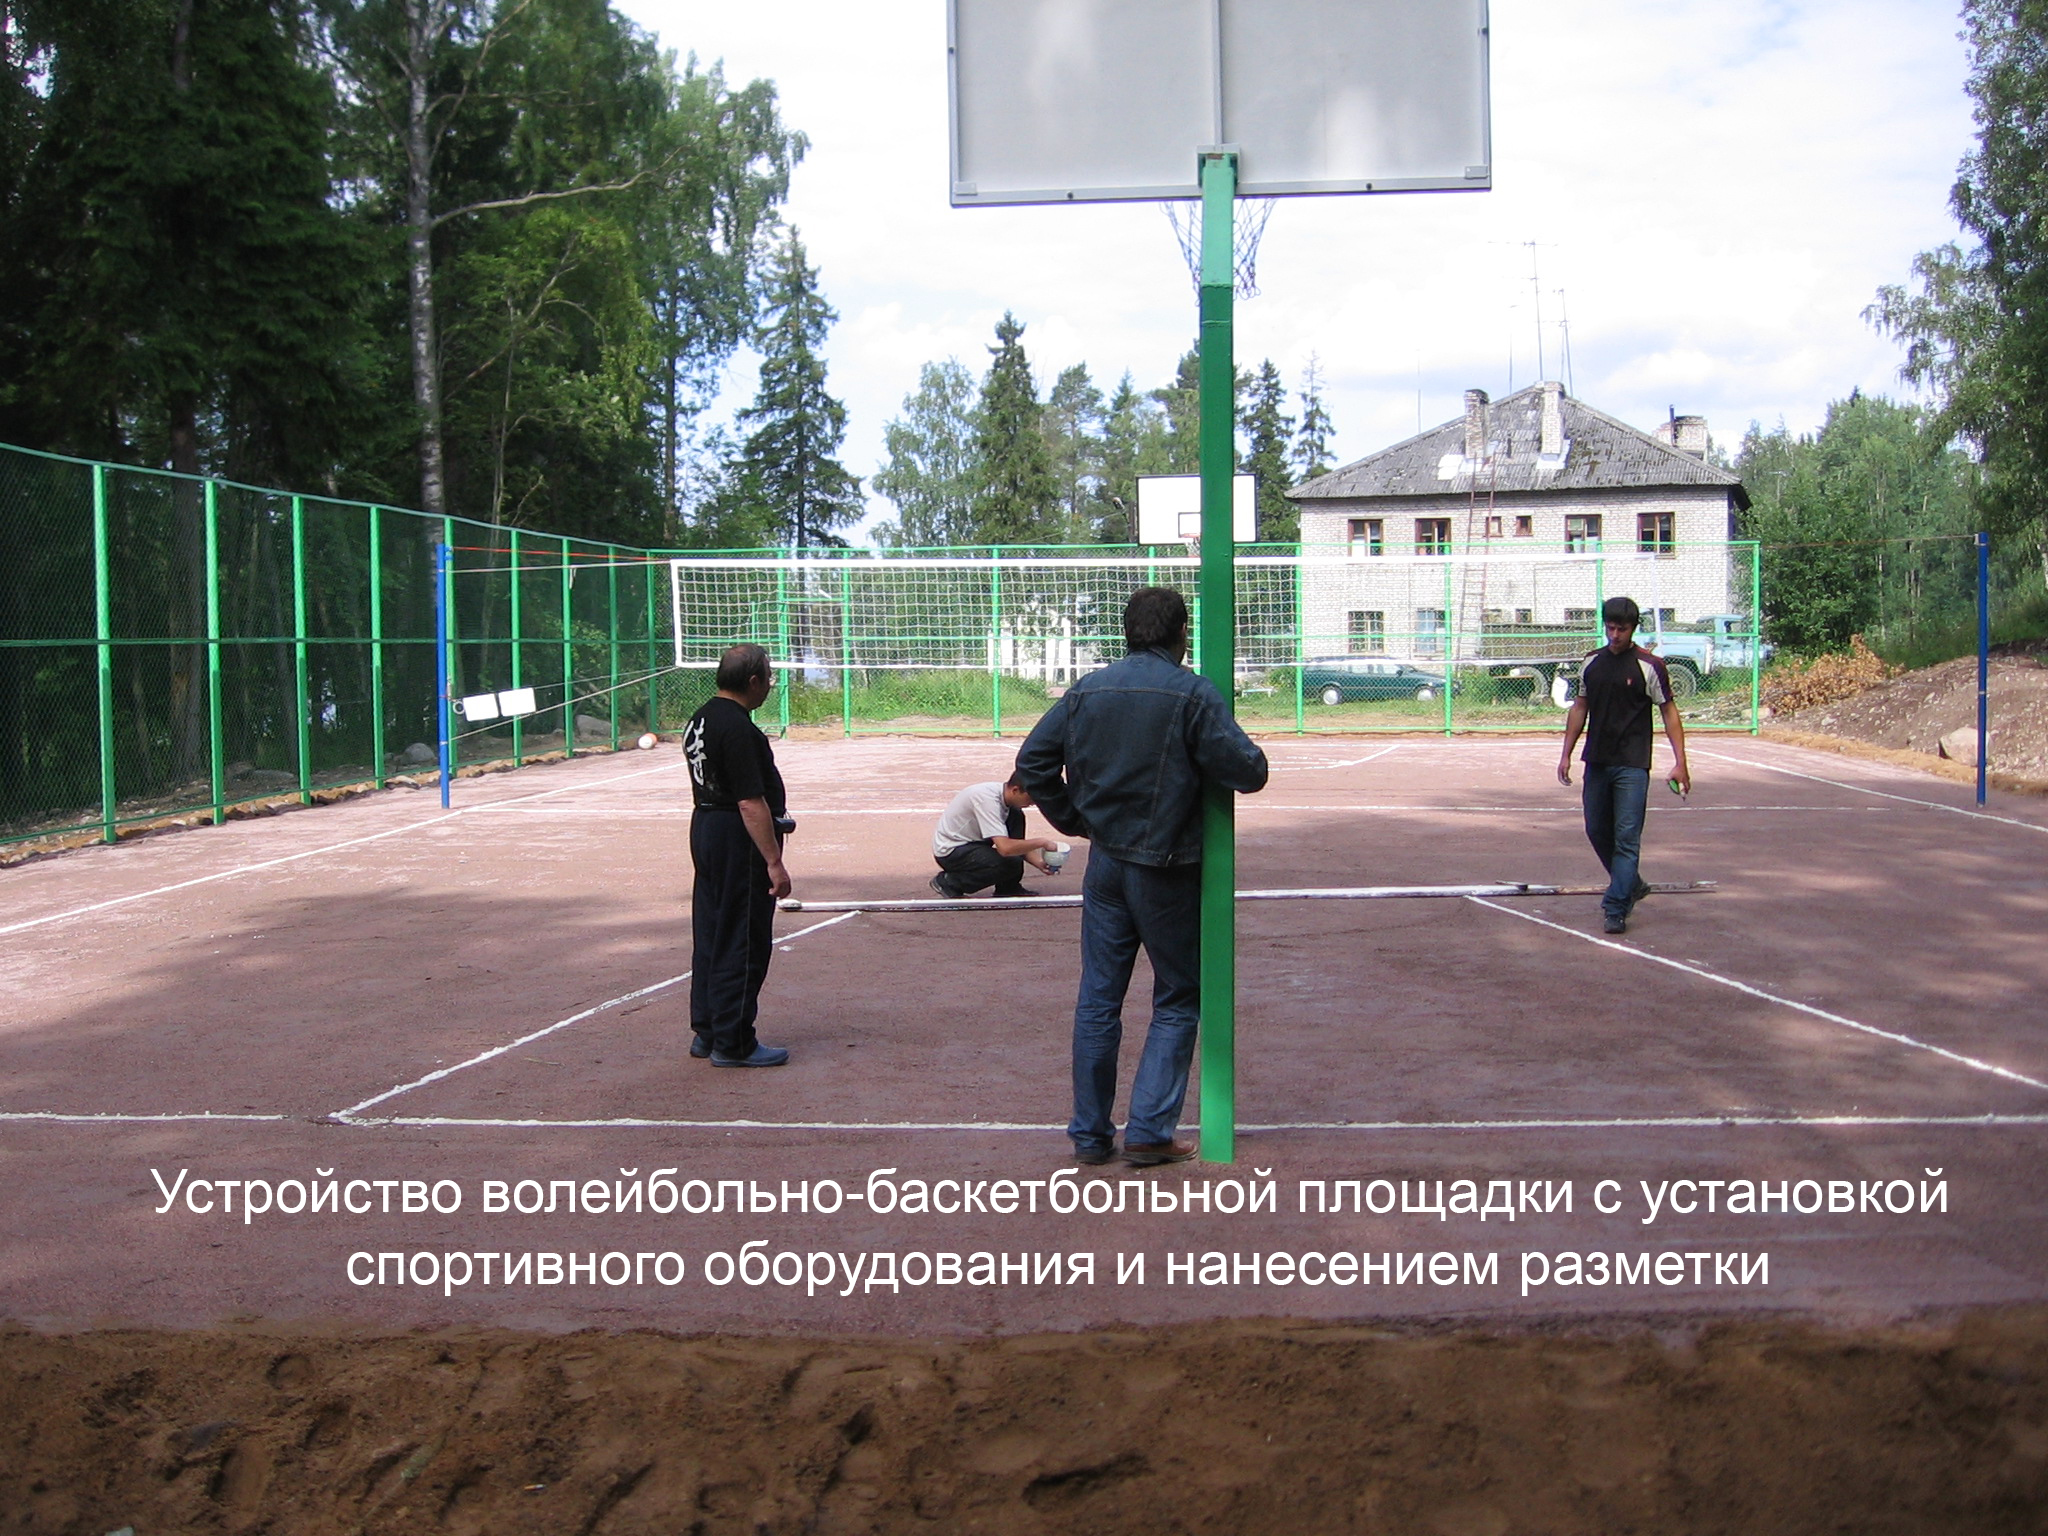 Устройство волейбольно-баскетбольной площадки с установкой спортивного оборудования и нанесением разметки